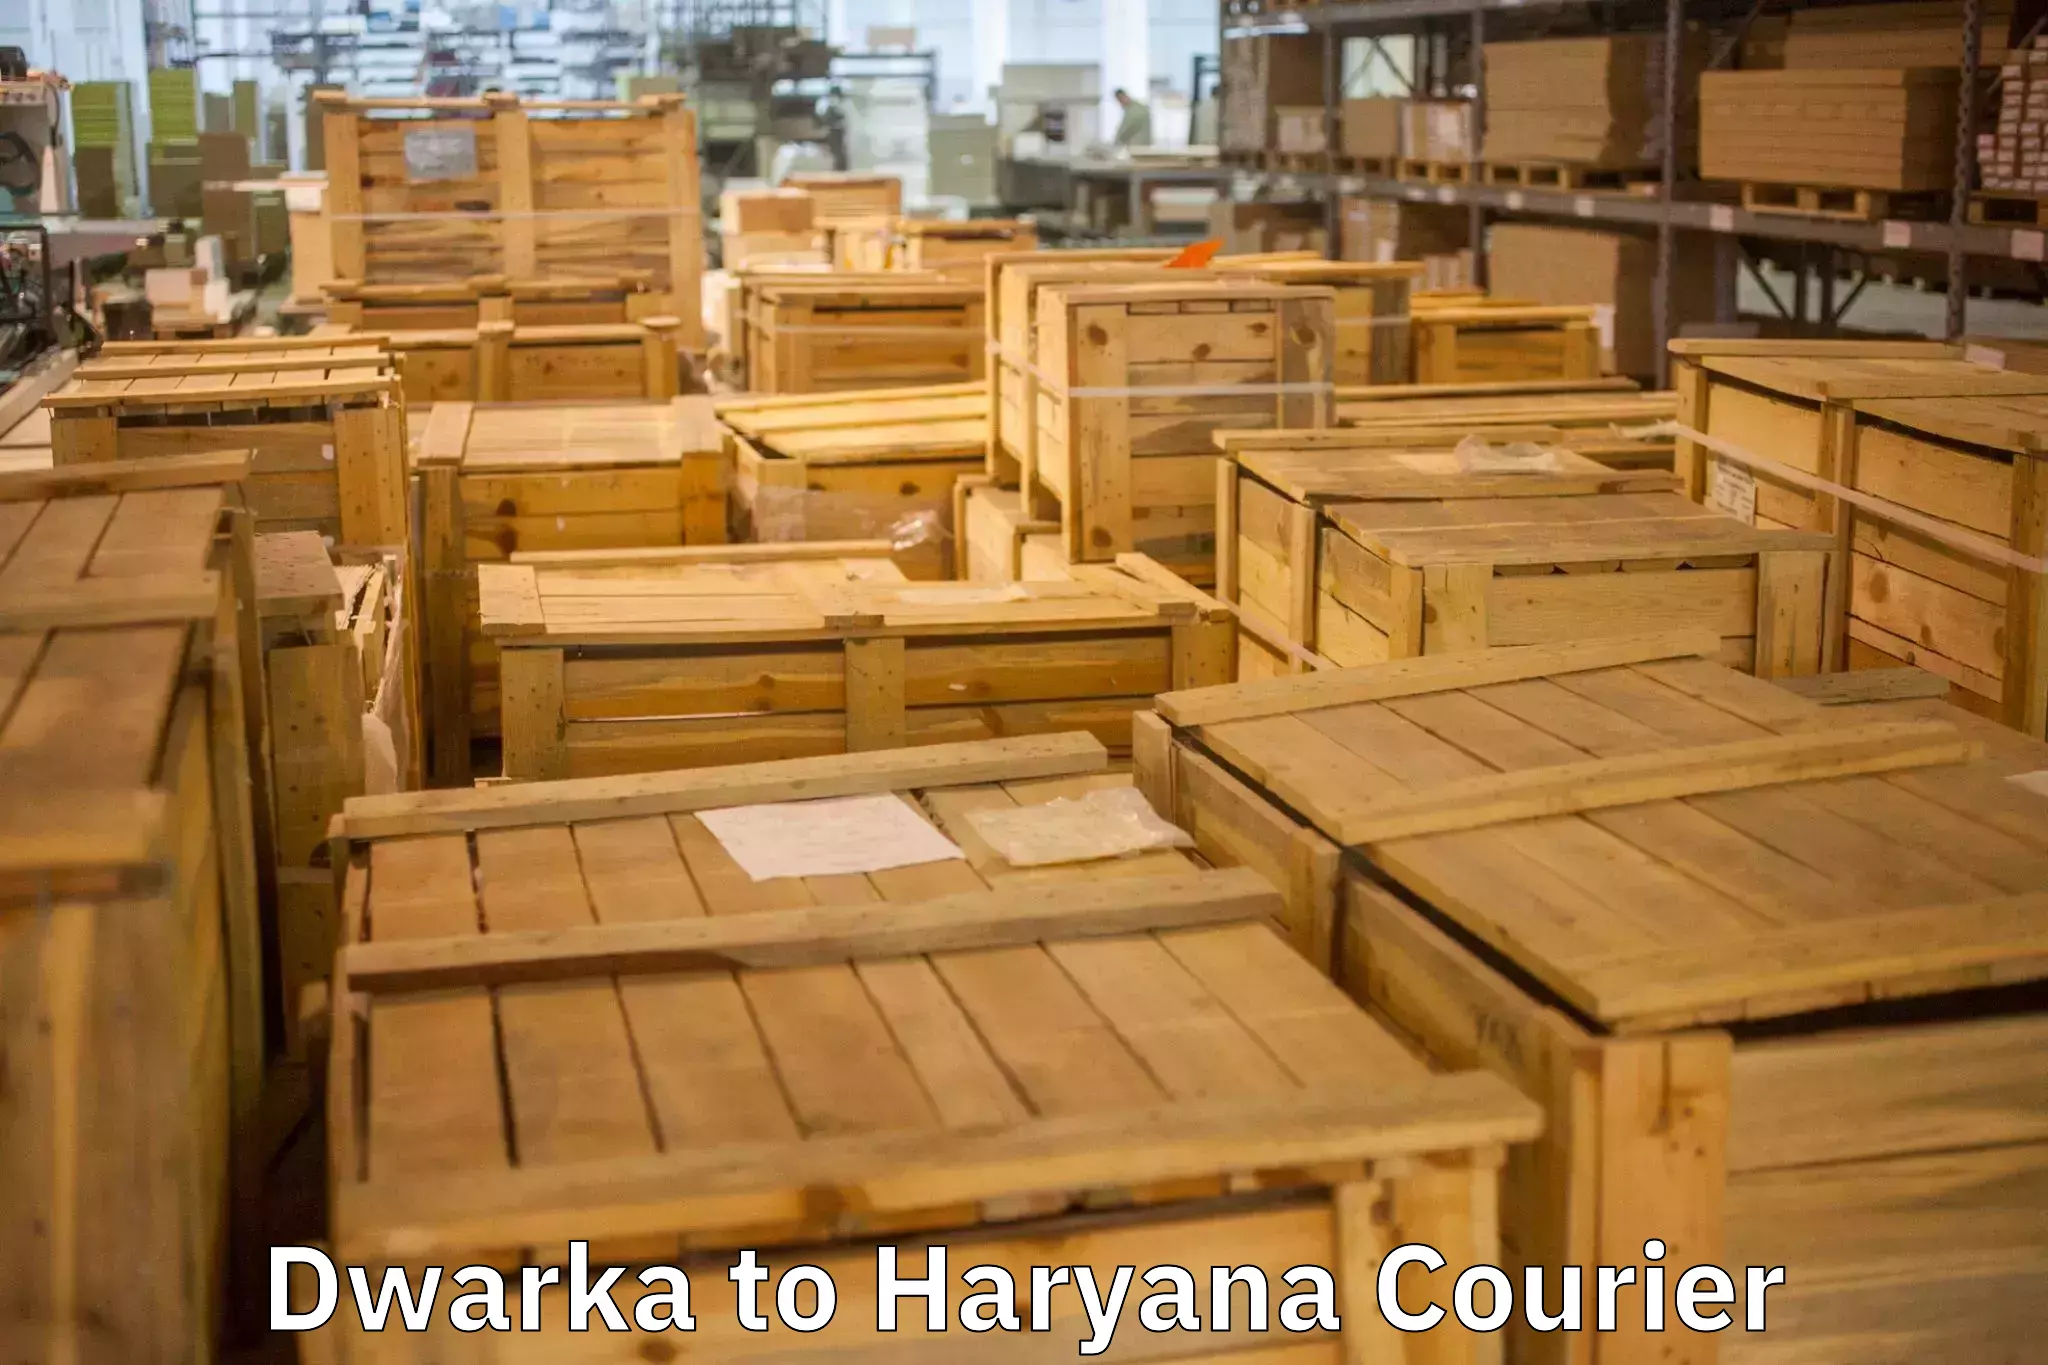 Quality moving company Dwarka to Haryana